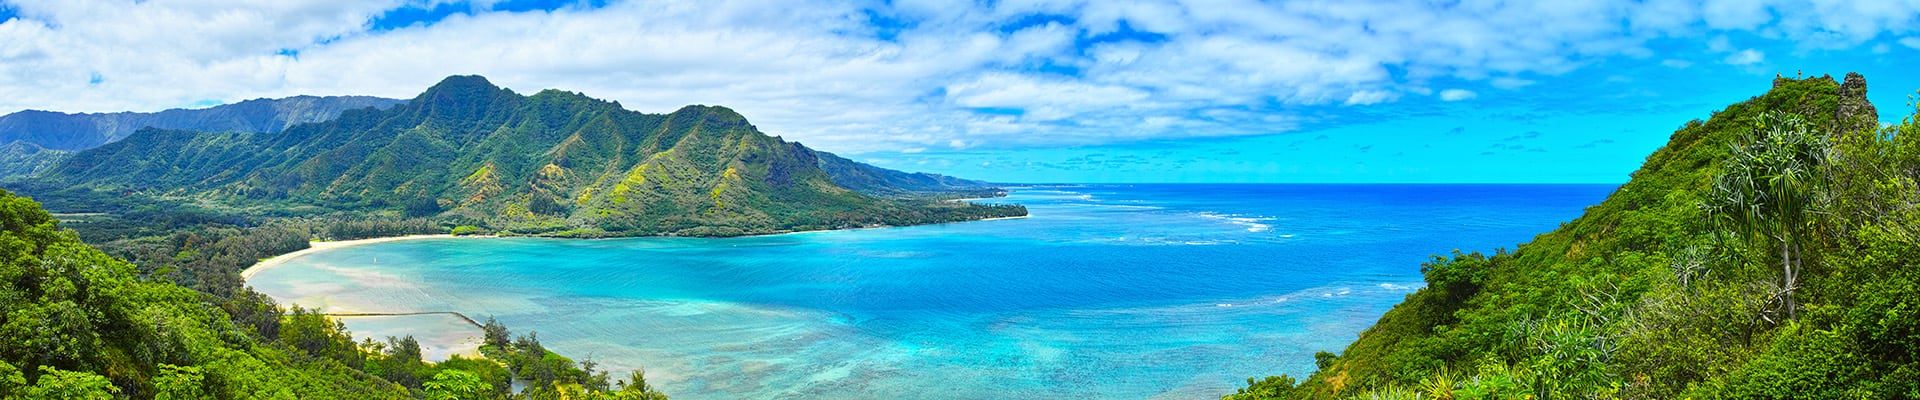 hawaii cruise islands